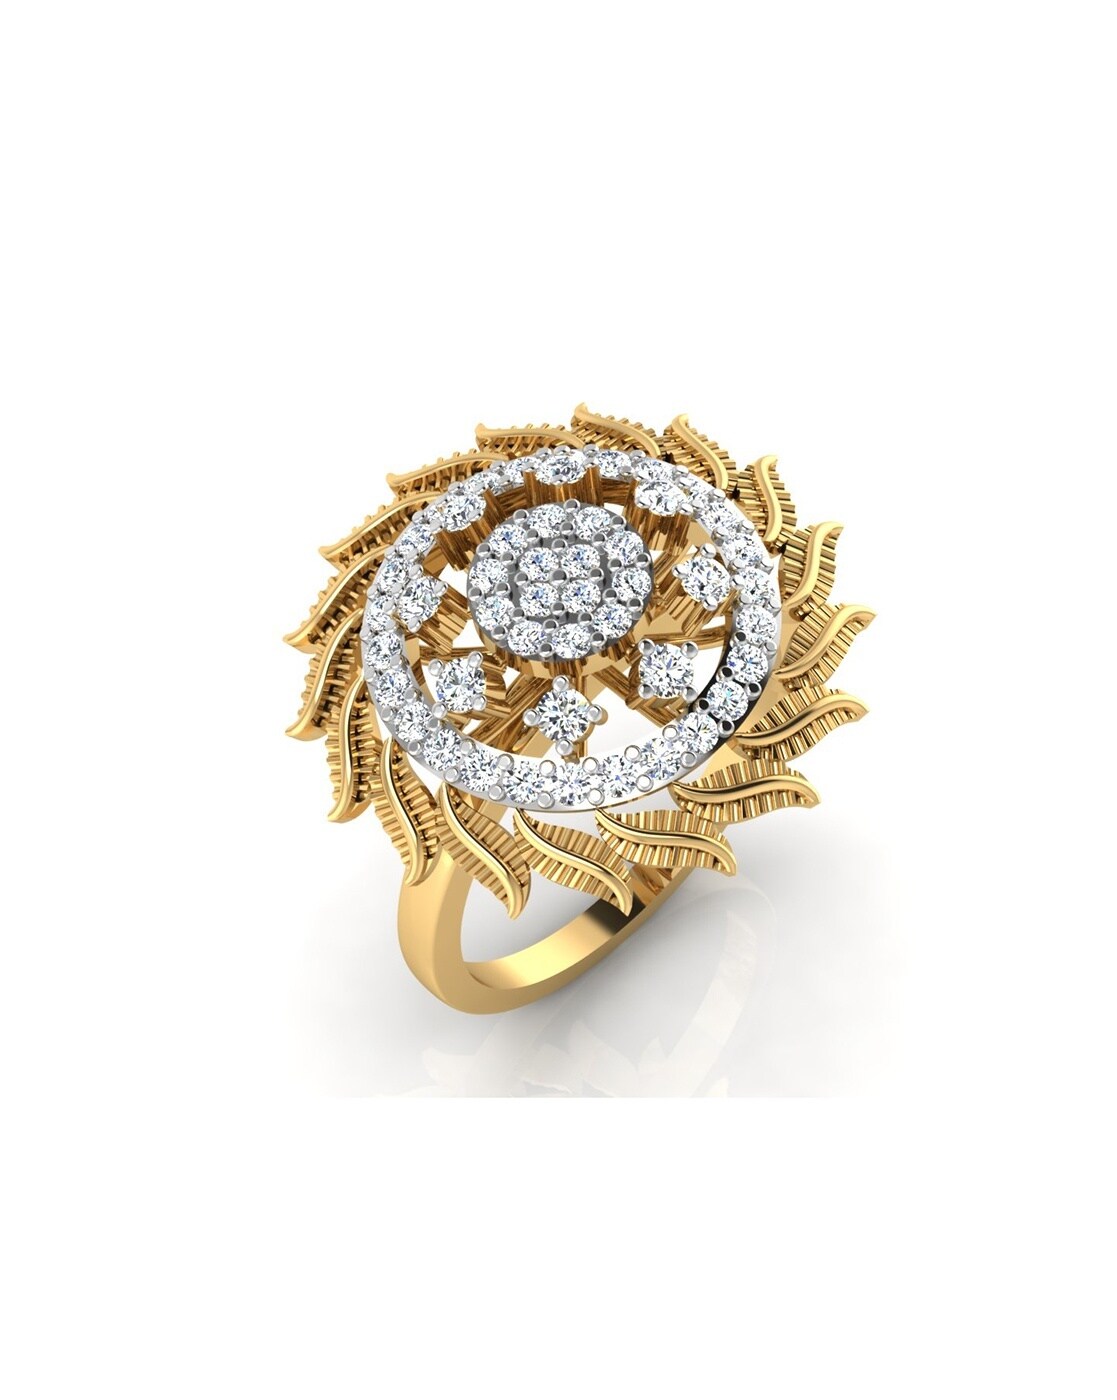 12 Carat Diamond LHuge Cocktail Ring Custom Made Floral Motif 14k White Gold  | eBay